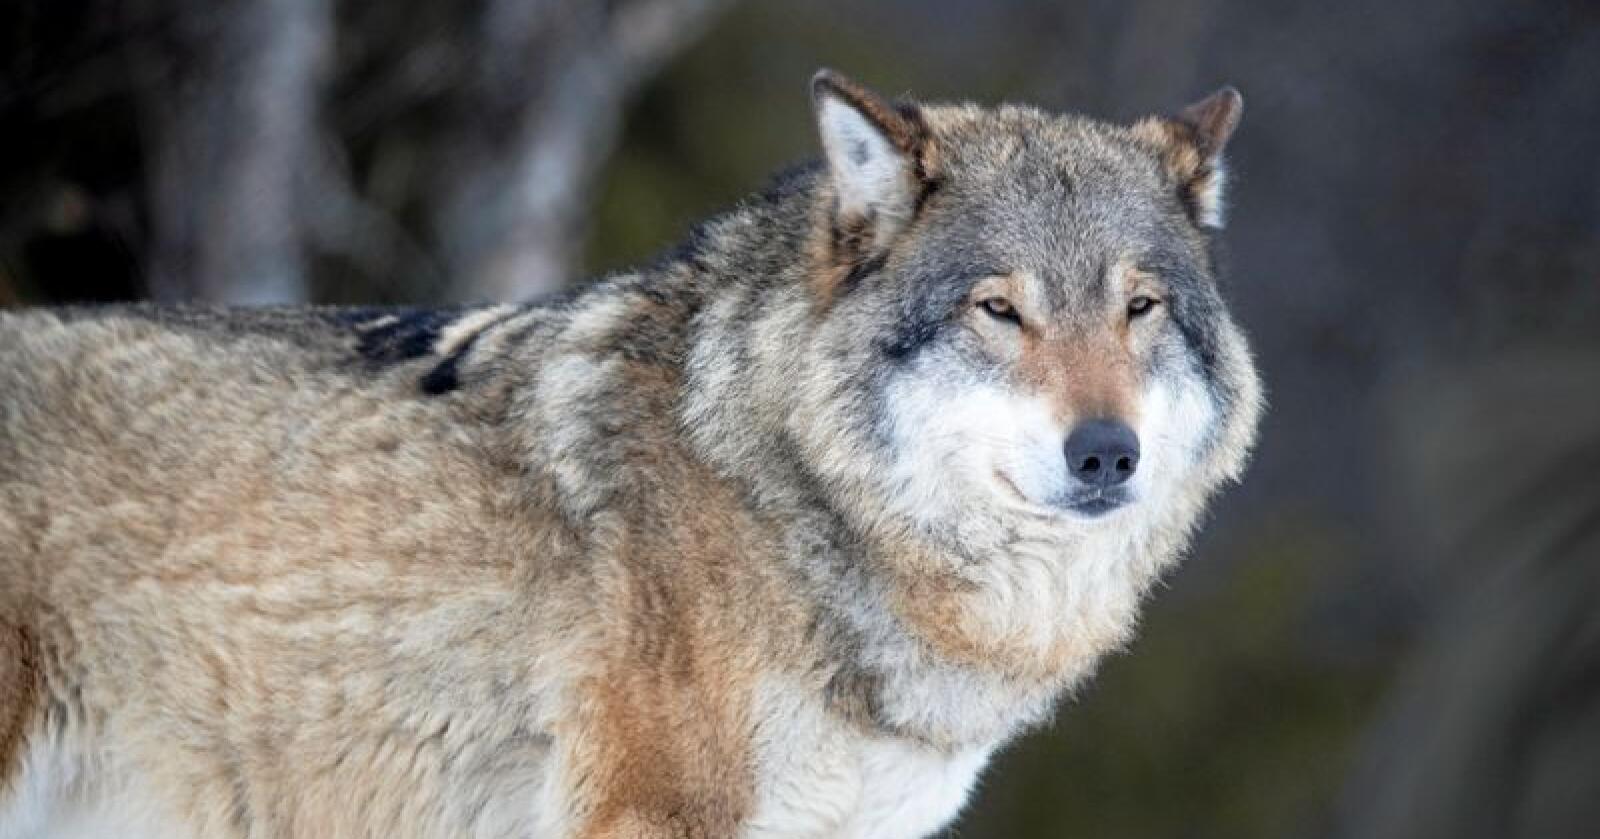 En ulv skal ha angrepet en pelsdyrgård i Finland. Foto: Heiko Junge / NTB scanpix